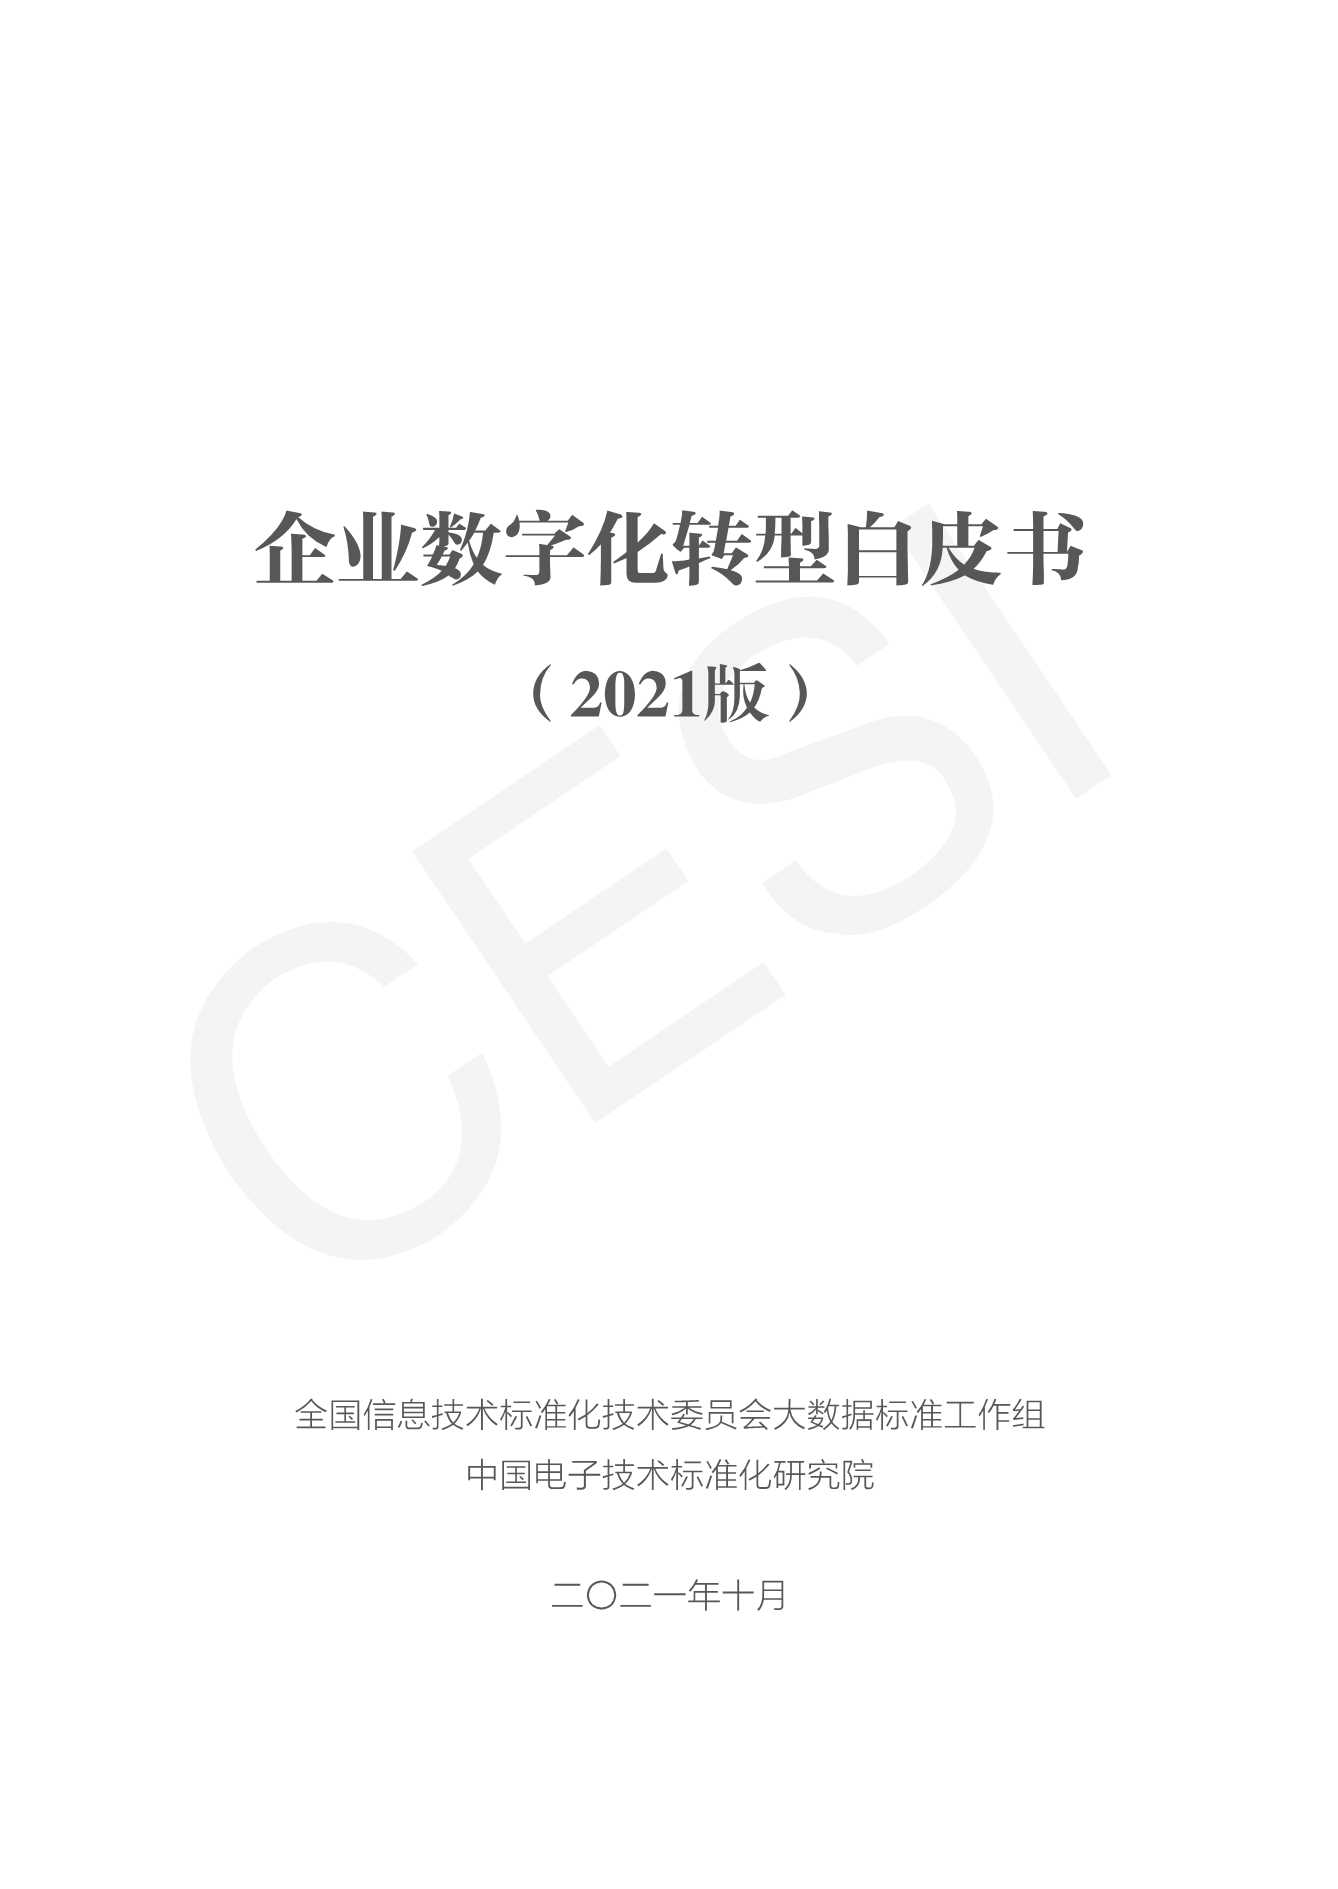 中国电子技术标准化研究院-企业数字化转型白皮书（2021版）-2021.11-83页